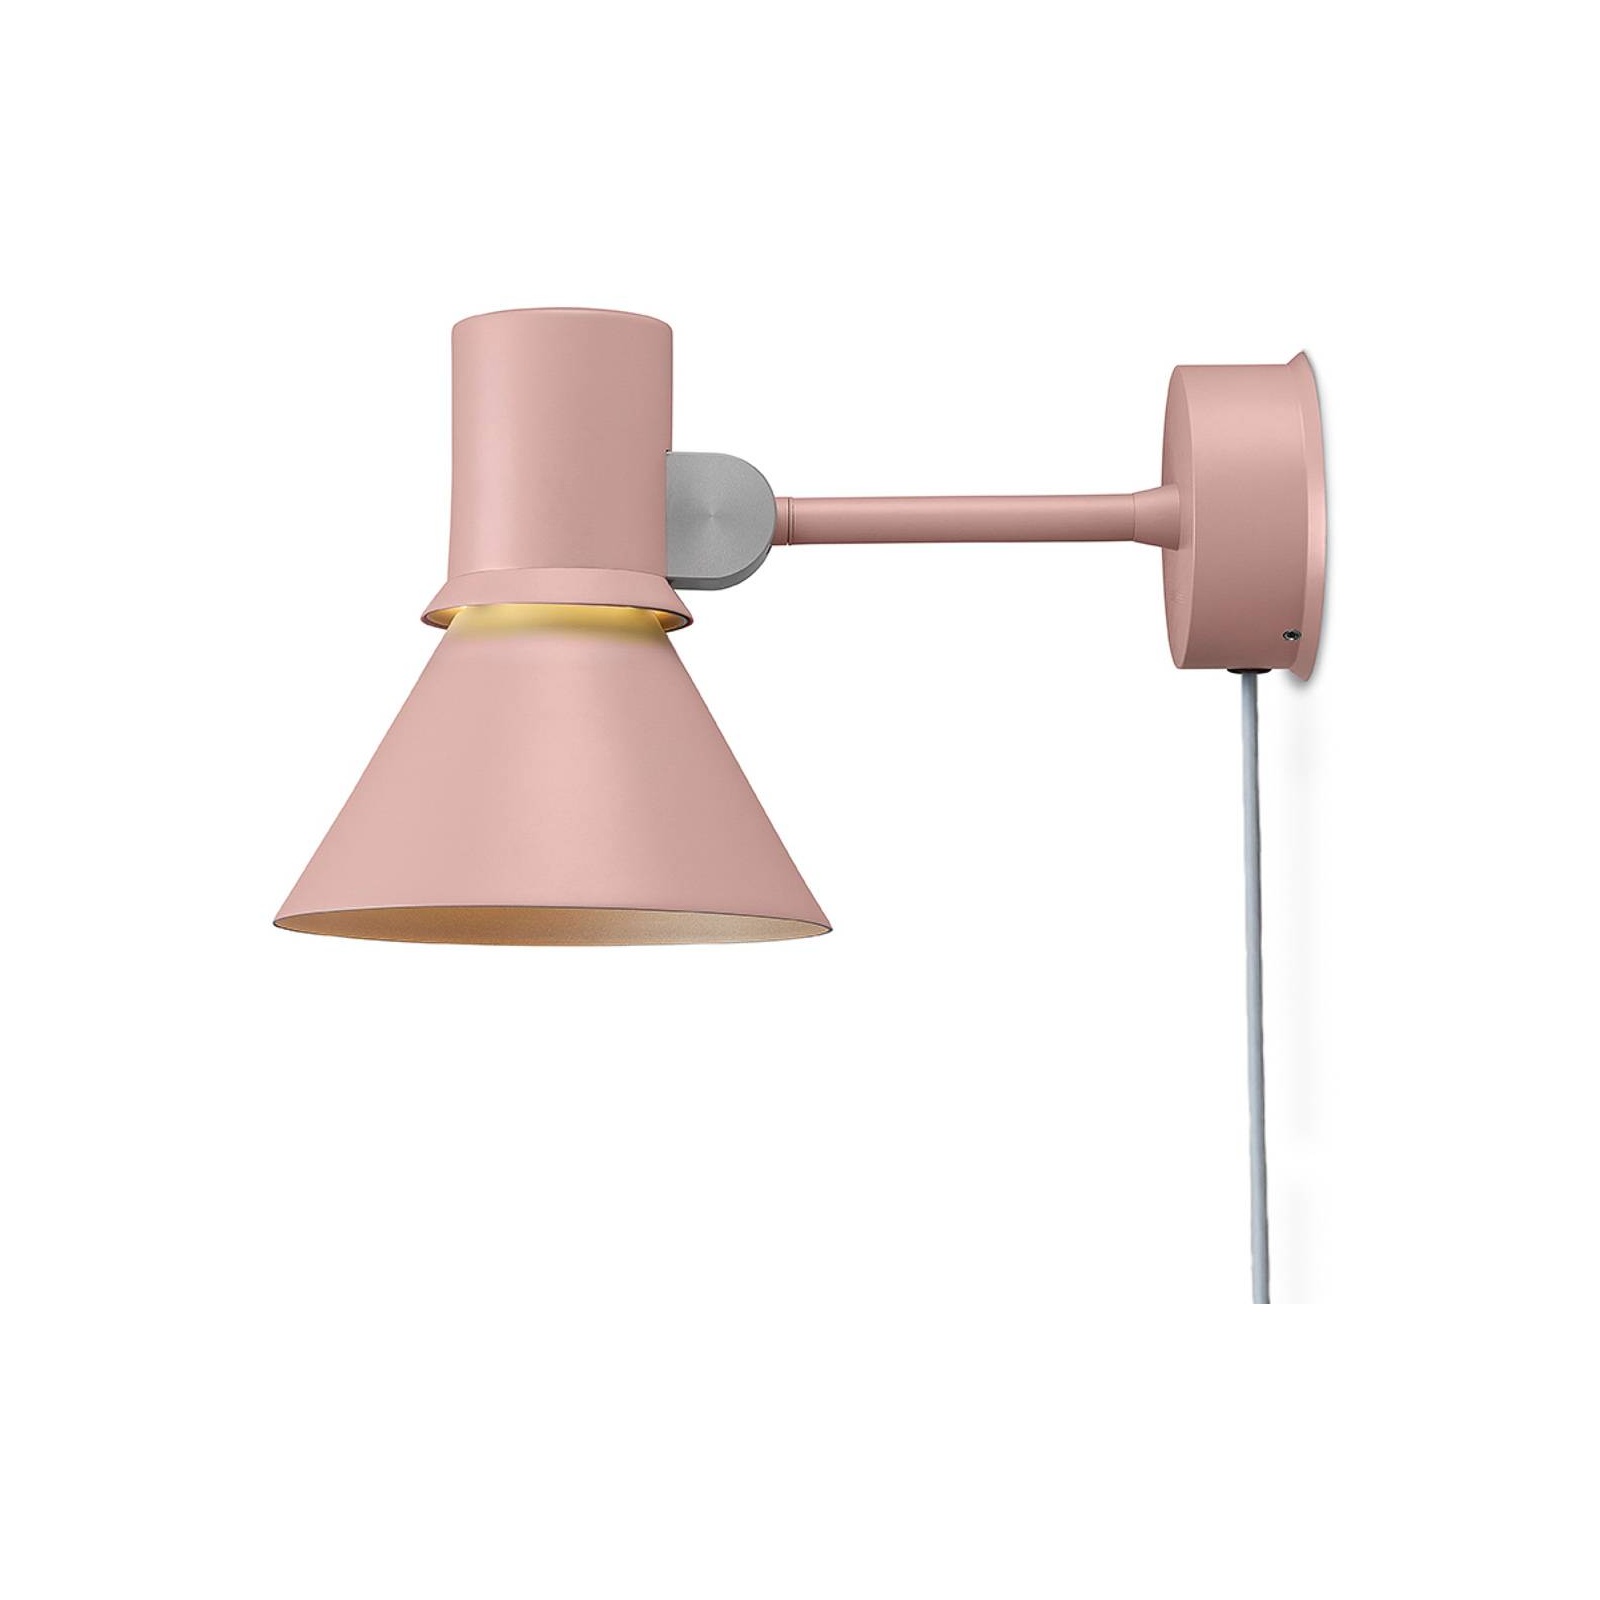 Bild von Type 80 W1 Wandlampe mit Stecker, rosé